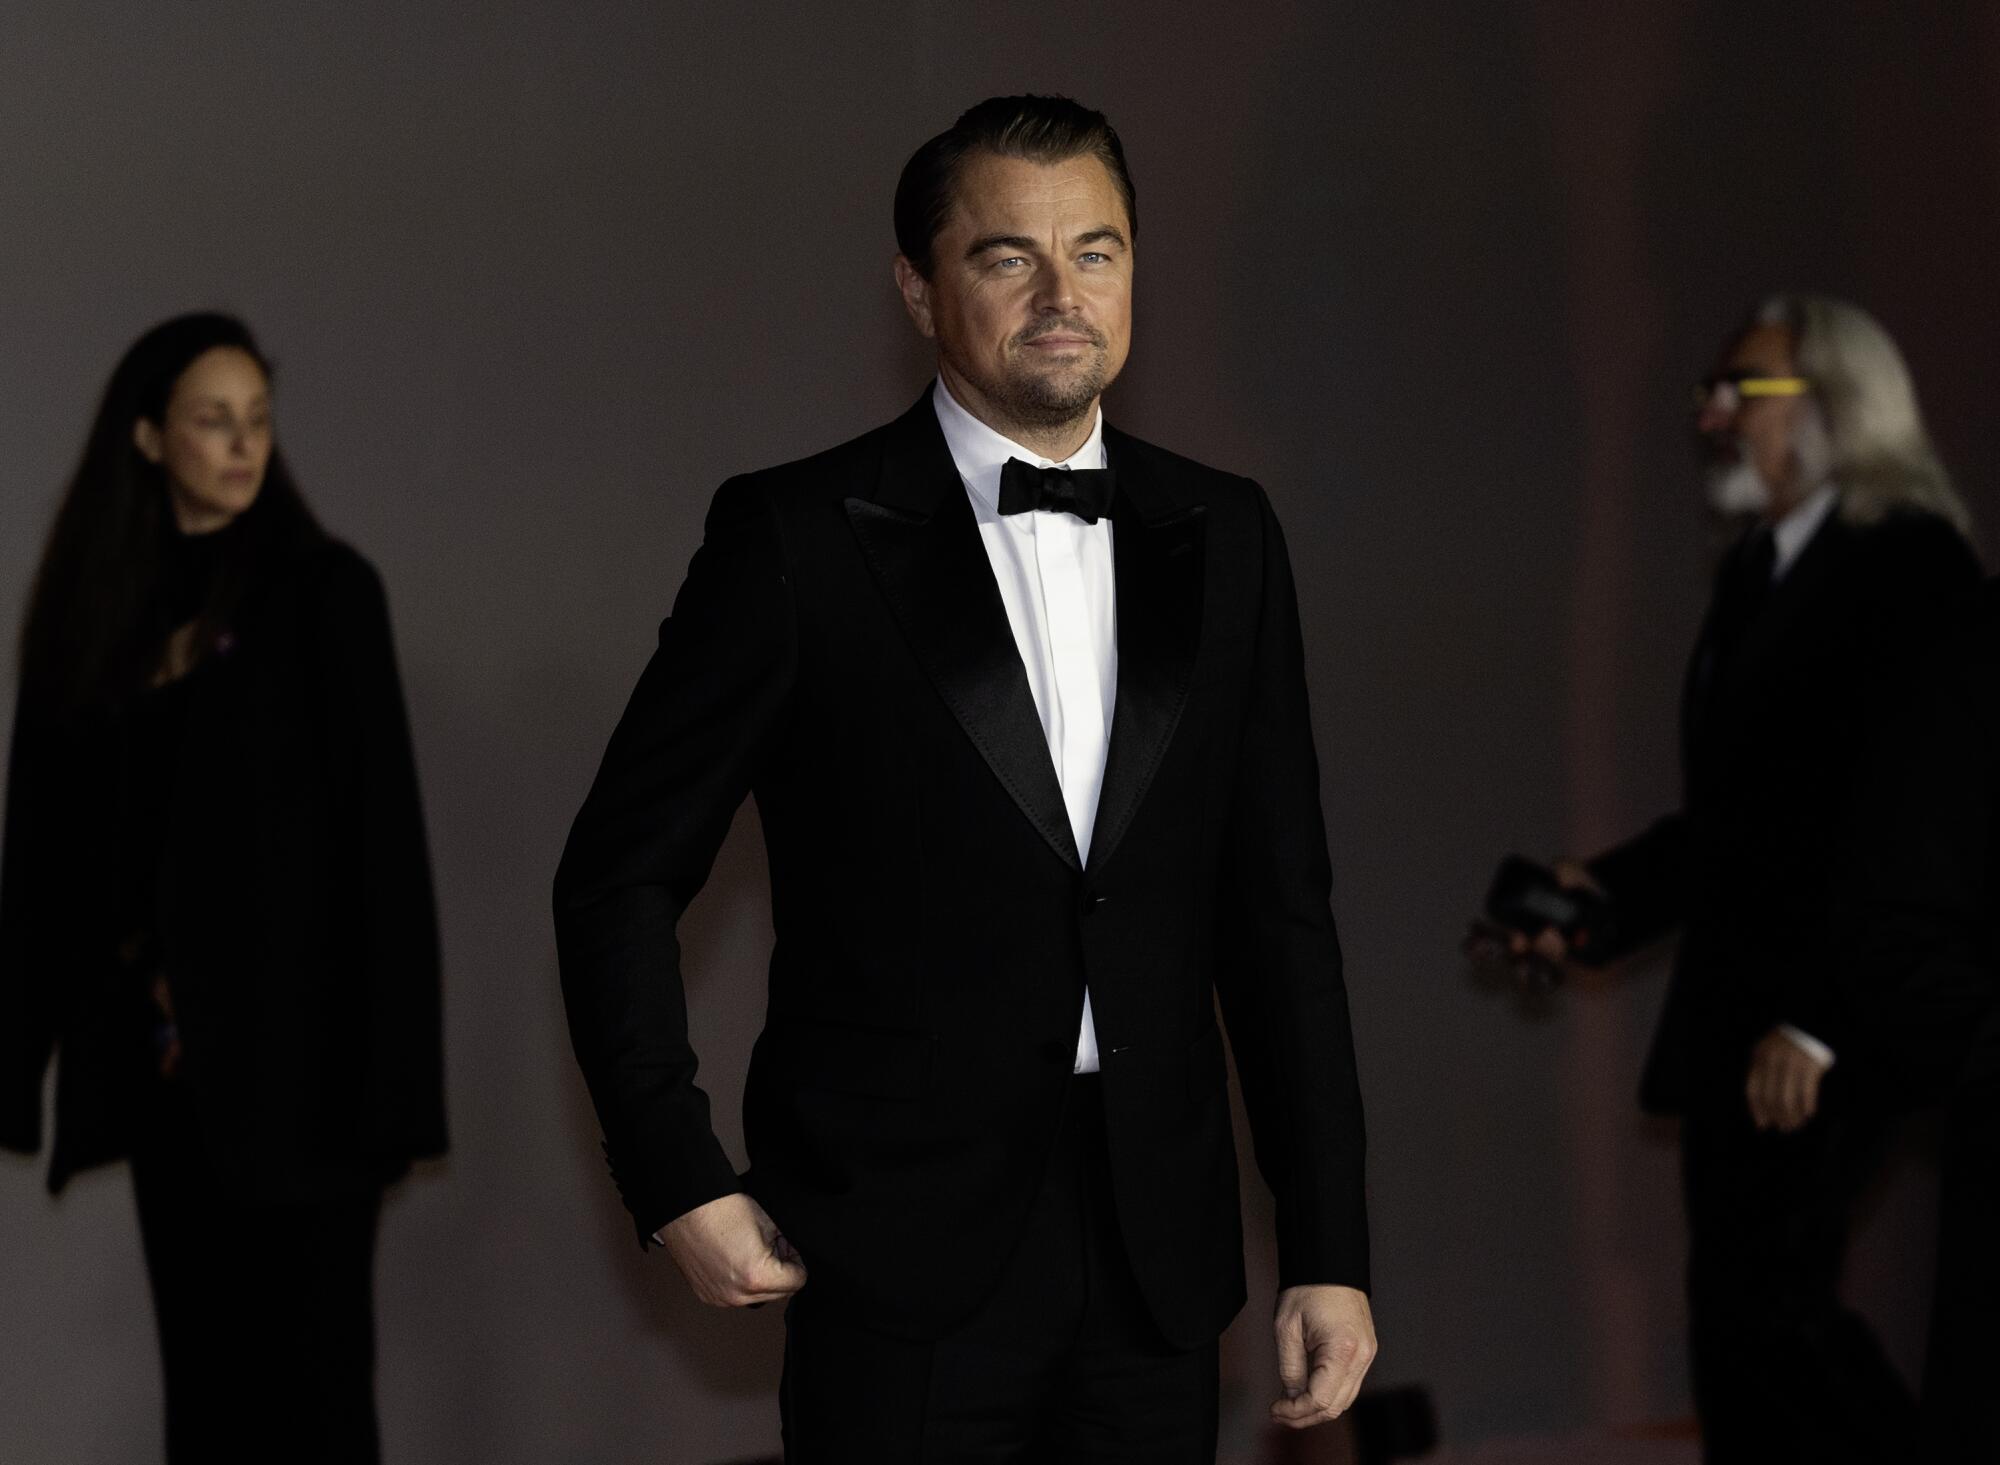  Leonardo DiCaprio attends the 3rd Annual Academy Museum Gala 